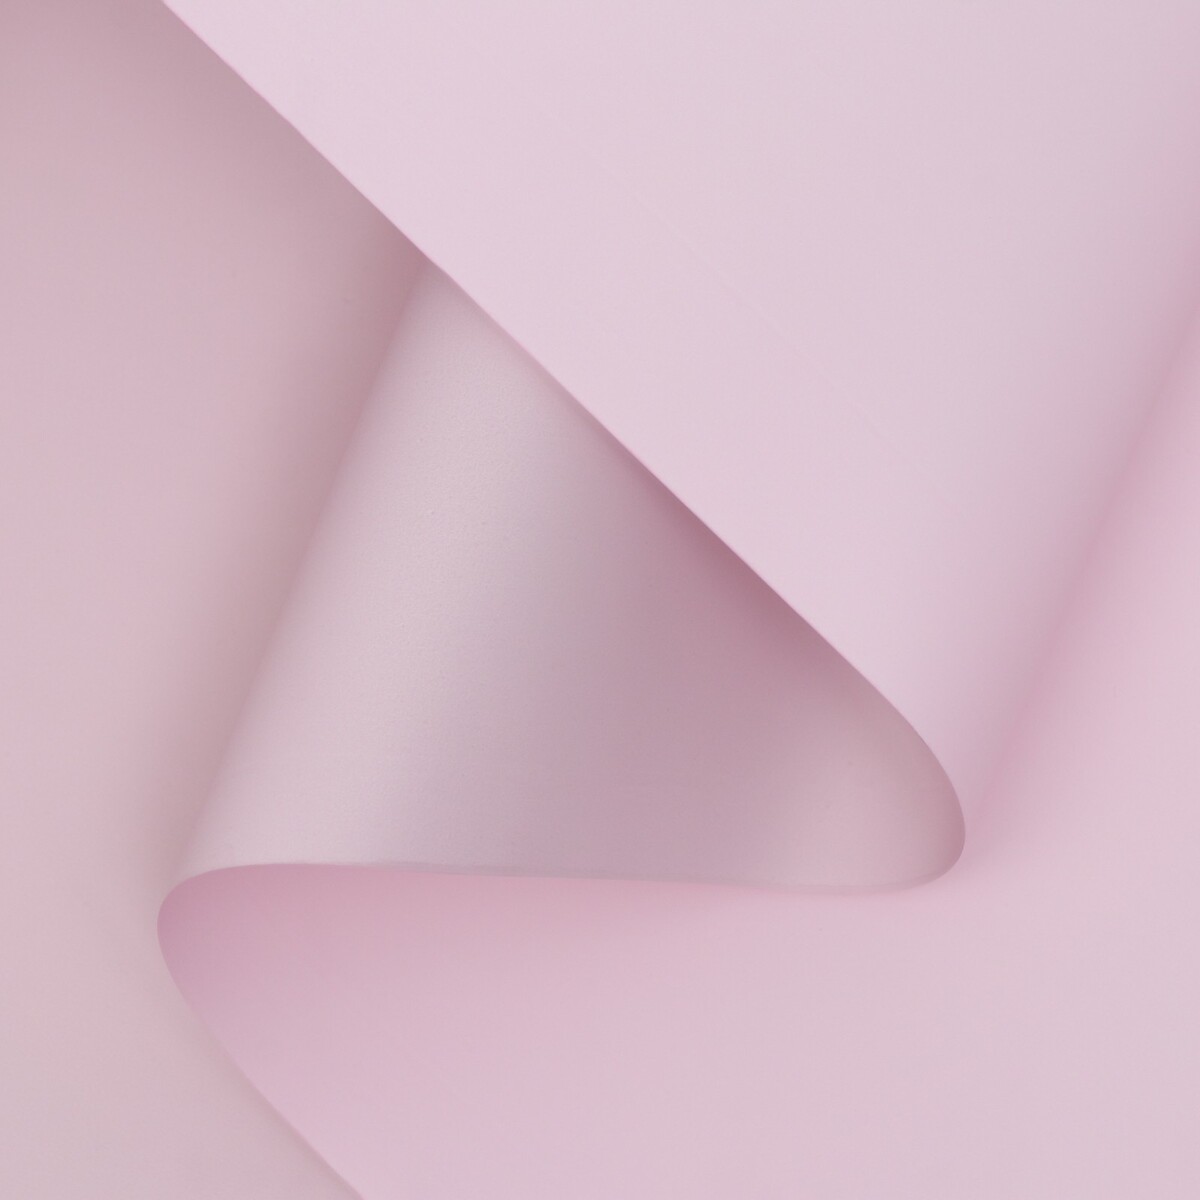 Пленка матовая двухсторонняя , пастельная серия, 65 мкм пастельный, розовый, 0,5 x 10 м